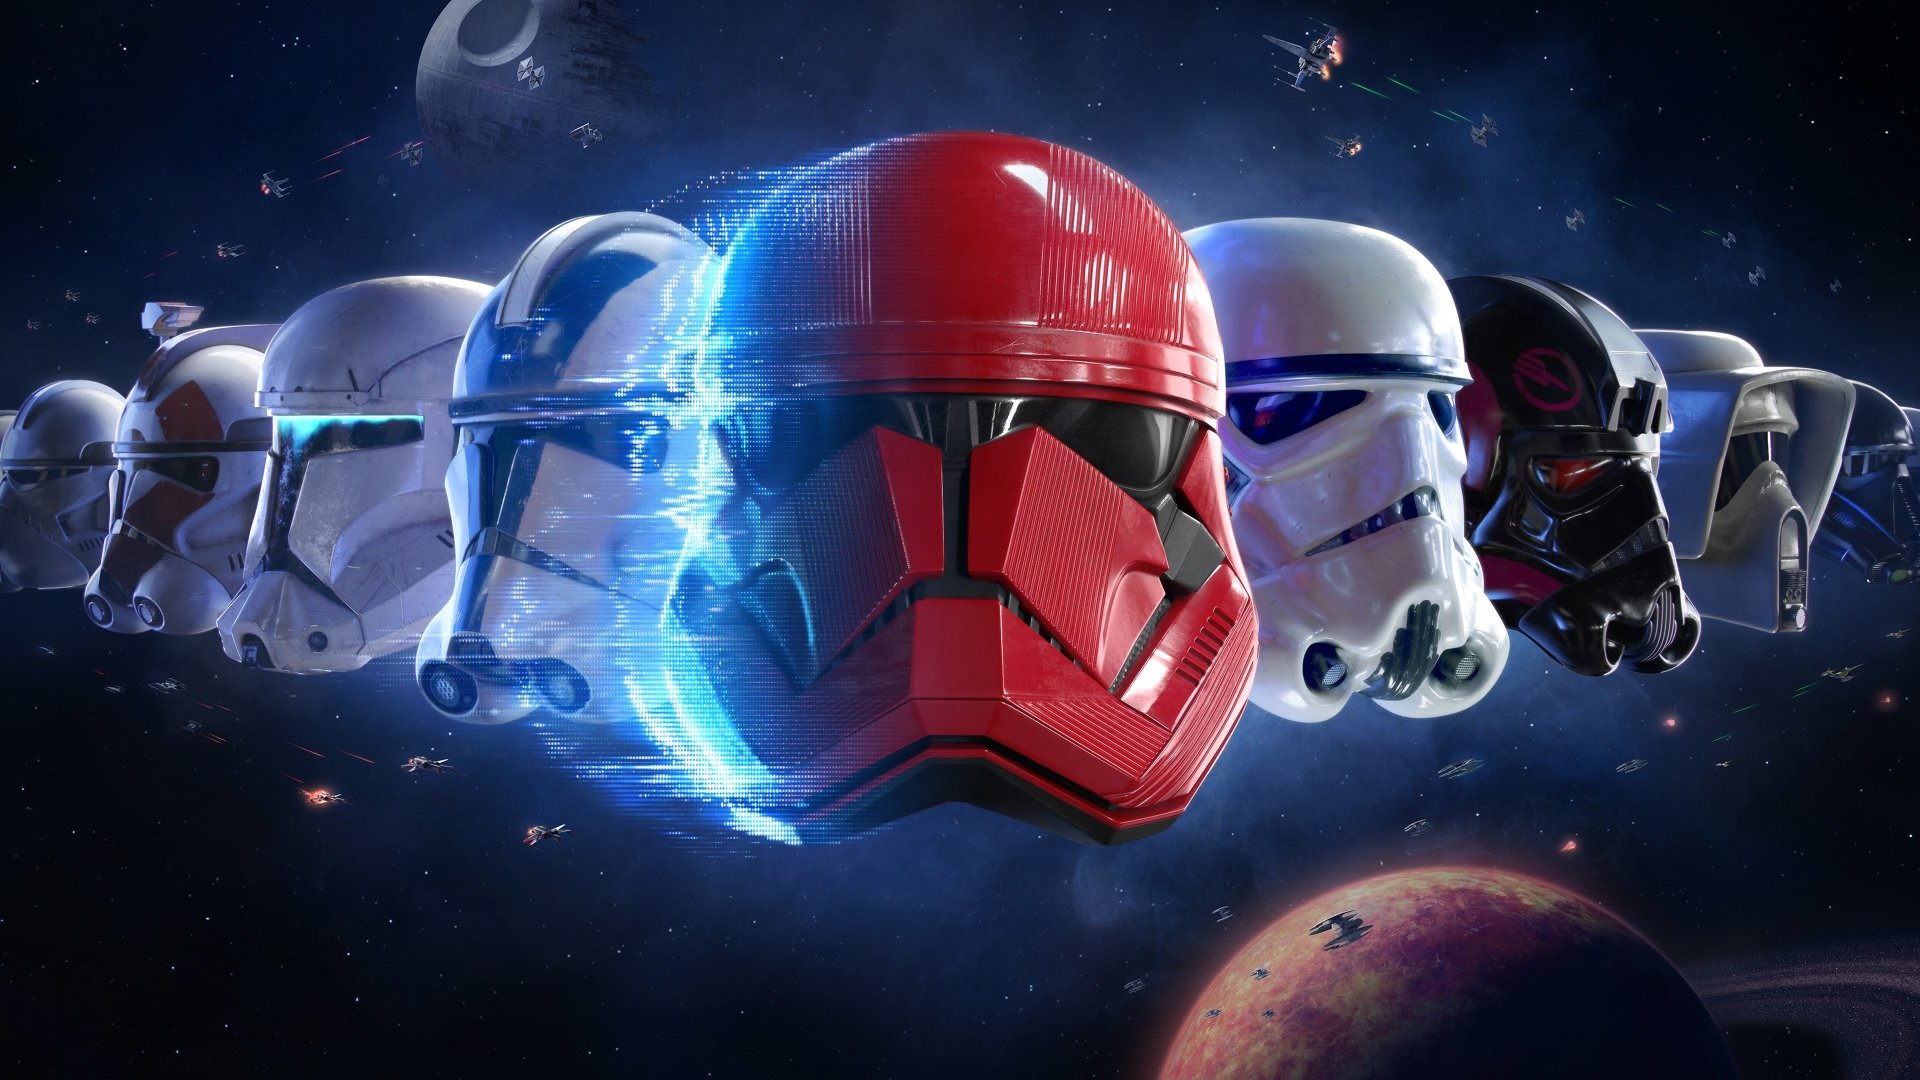 4K Star Wars Battlefront II (2017) Wallpaper and Background Image